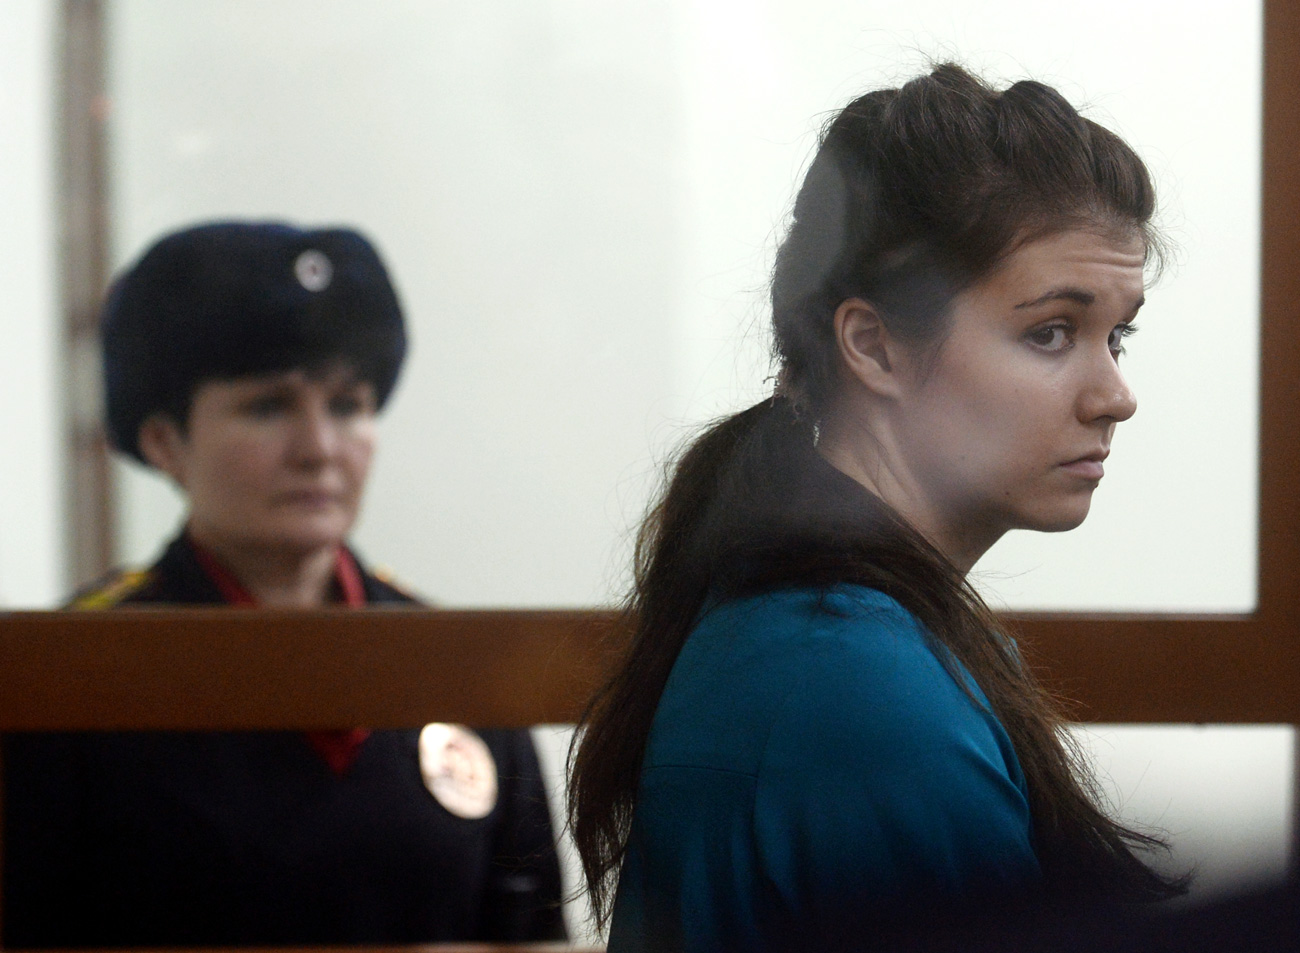 Pengadilan Militer Distrik Moskow menjatuhkan hukuman 4,5 tahun penjara untuk mantan mahasiswa Universitas Negeri Moskow Varvara Karaulova (Alexandra Ivanova) yang terbukti bersalah dalam upaya bergabung dengan kelompok teroris ISIS.